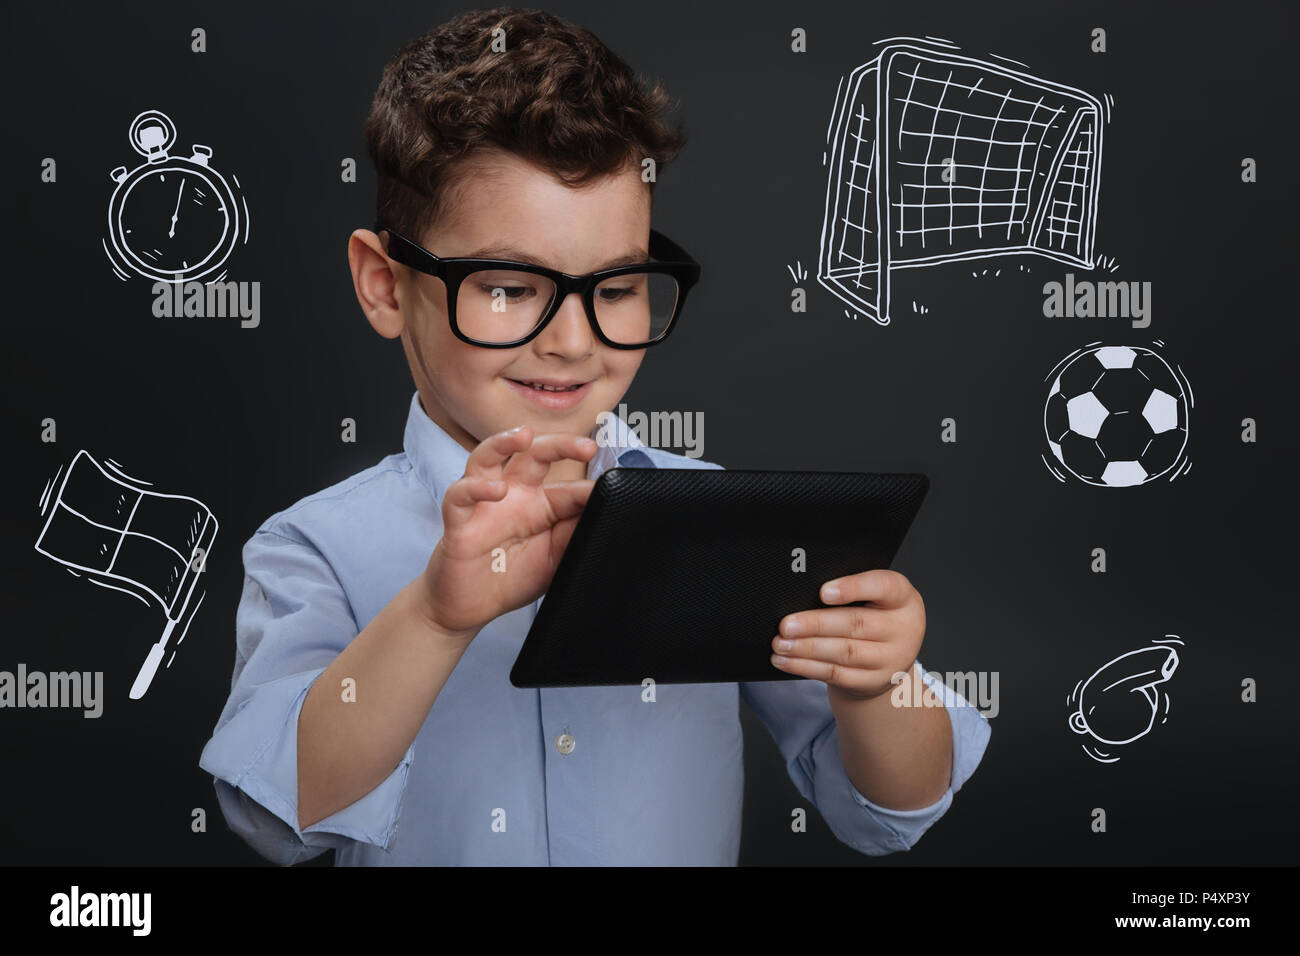 Calcio online immagini e fotografie stock ad alta risoluzione - Alamy